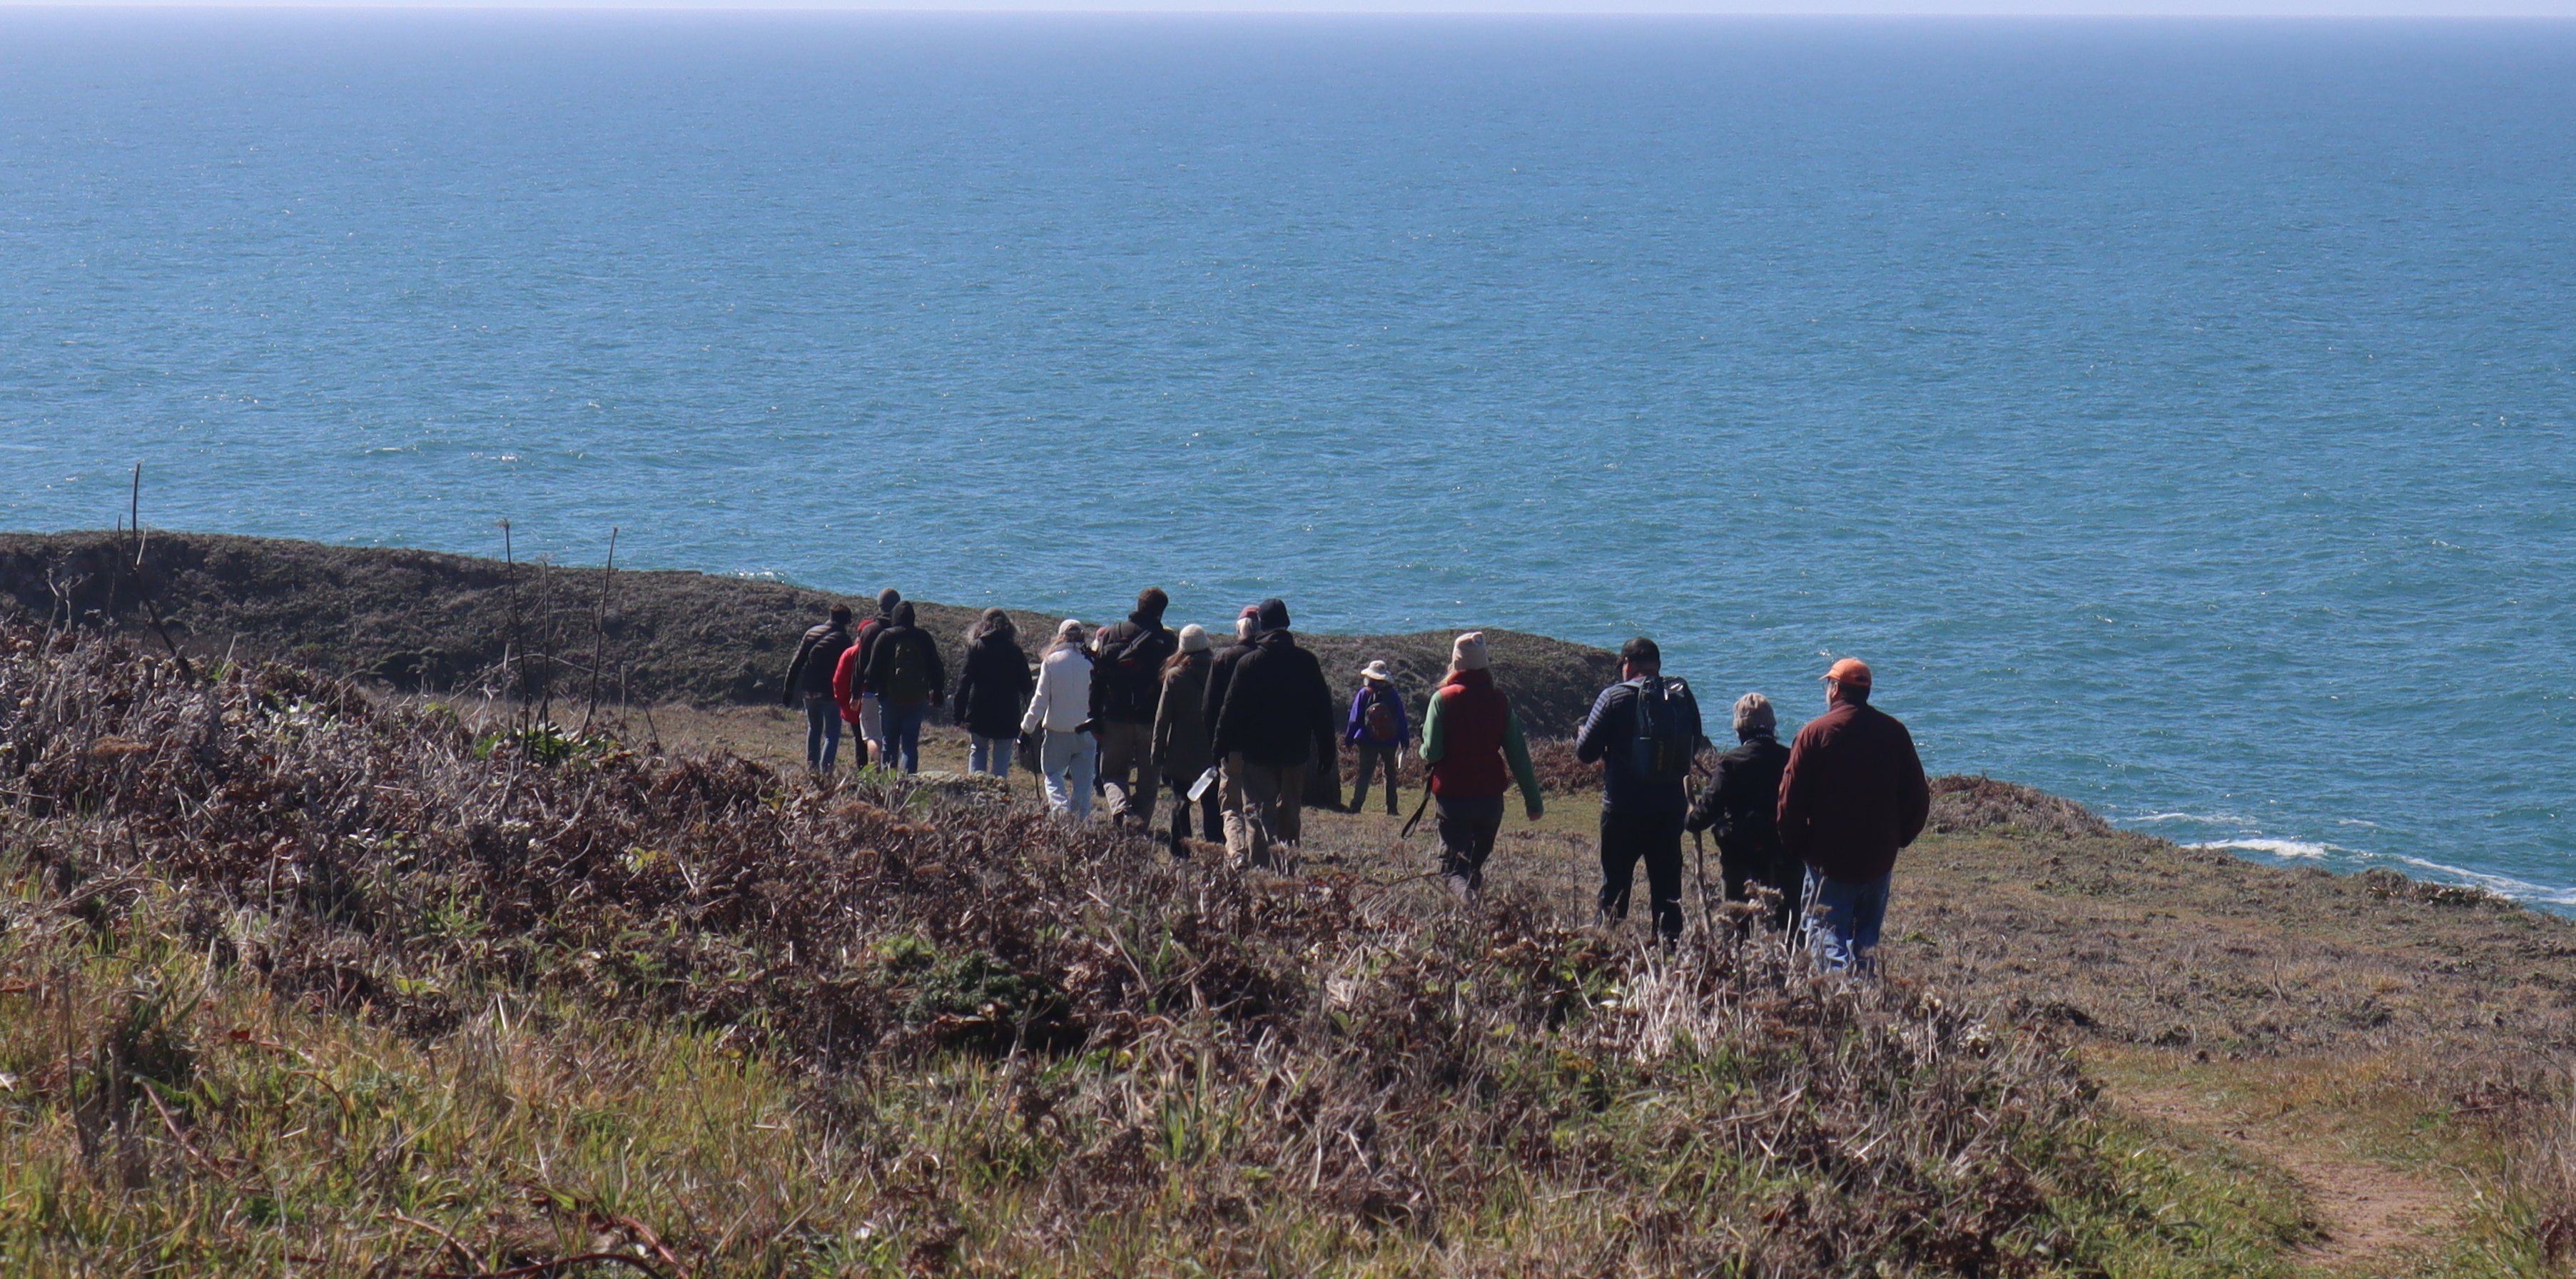 A hiking group walks along ocean bluffs